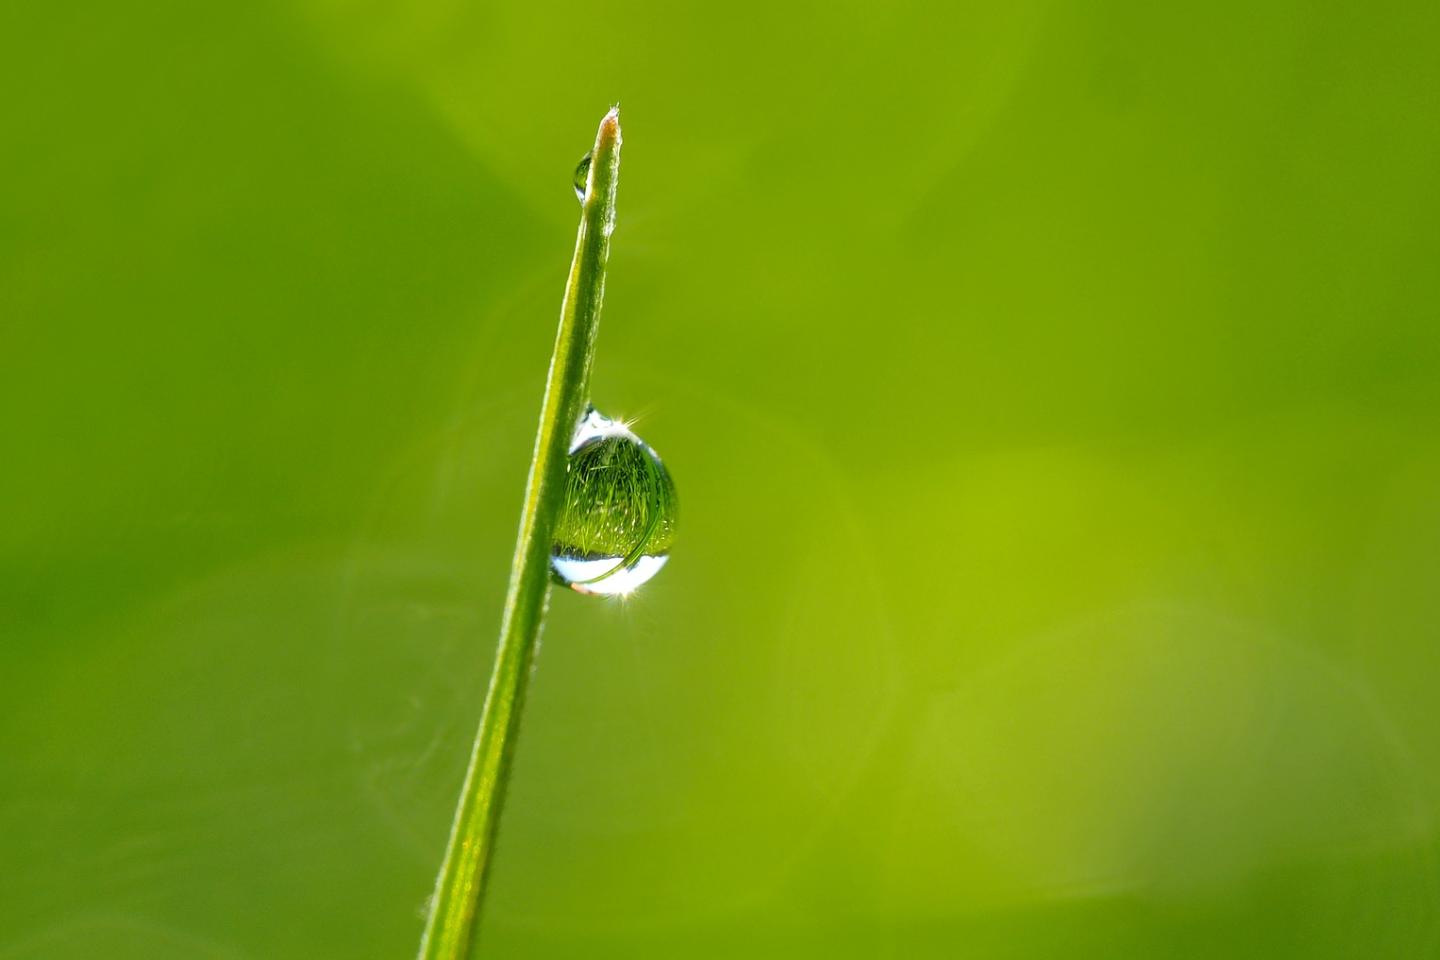 dewdrops-in-the-morning-sun-1373998_1920 kie-ker - pixabay